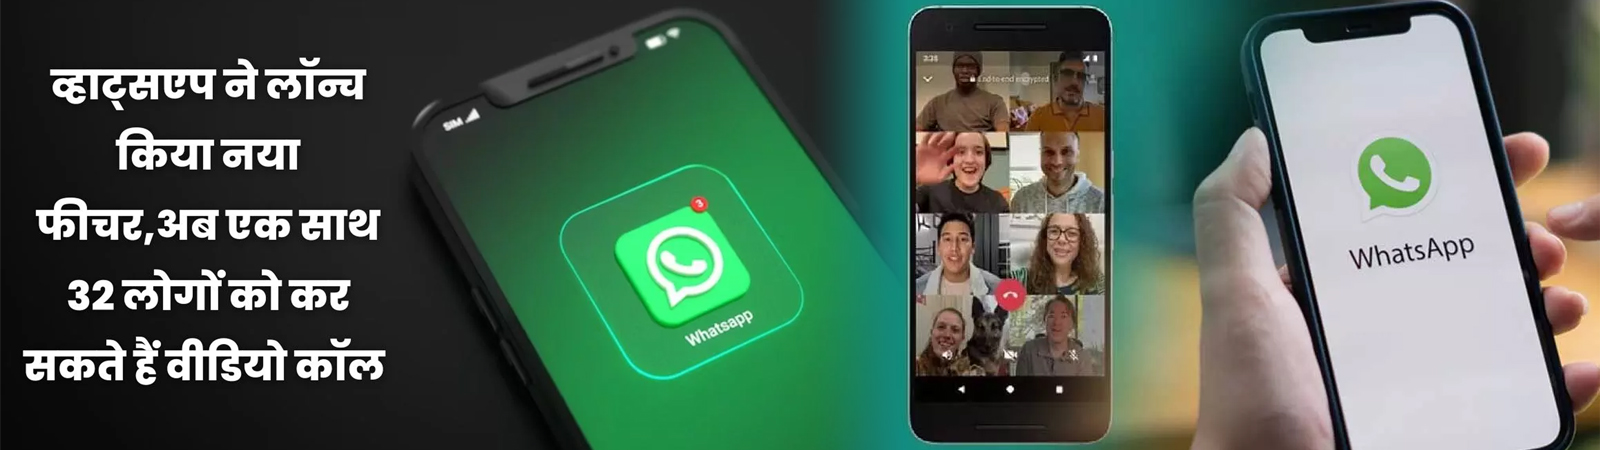 WhatsApp का आया feature कमाल 32 लोगों को एकसाथ लगाएँ video call